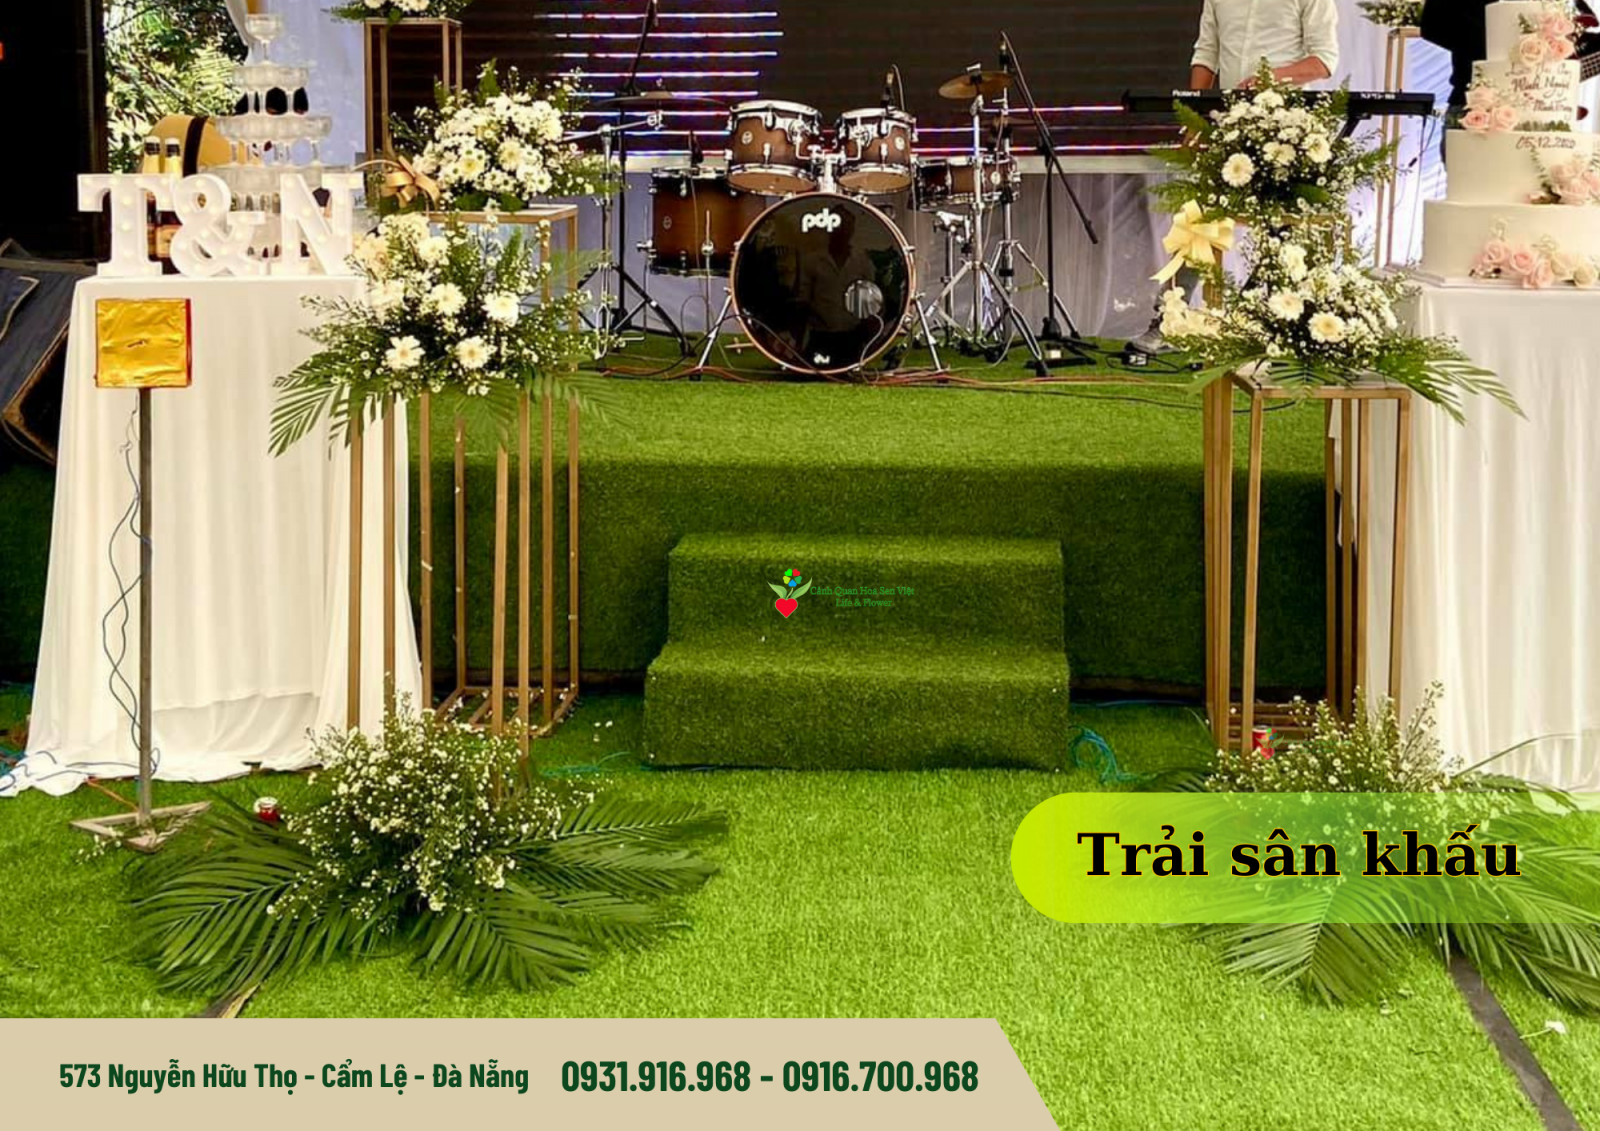 Cỏ nhân tạo trải sân sự kiện - Cửa hàng cỏ nhân tạo Đà Nẵng